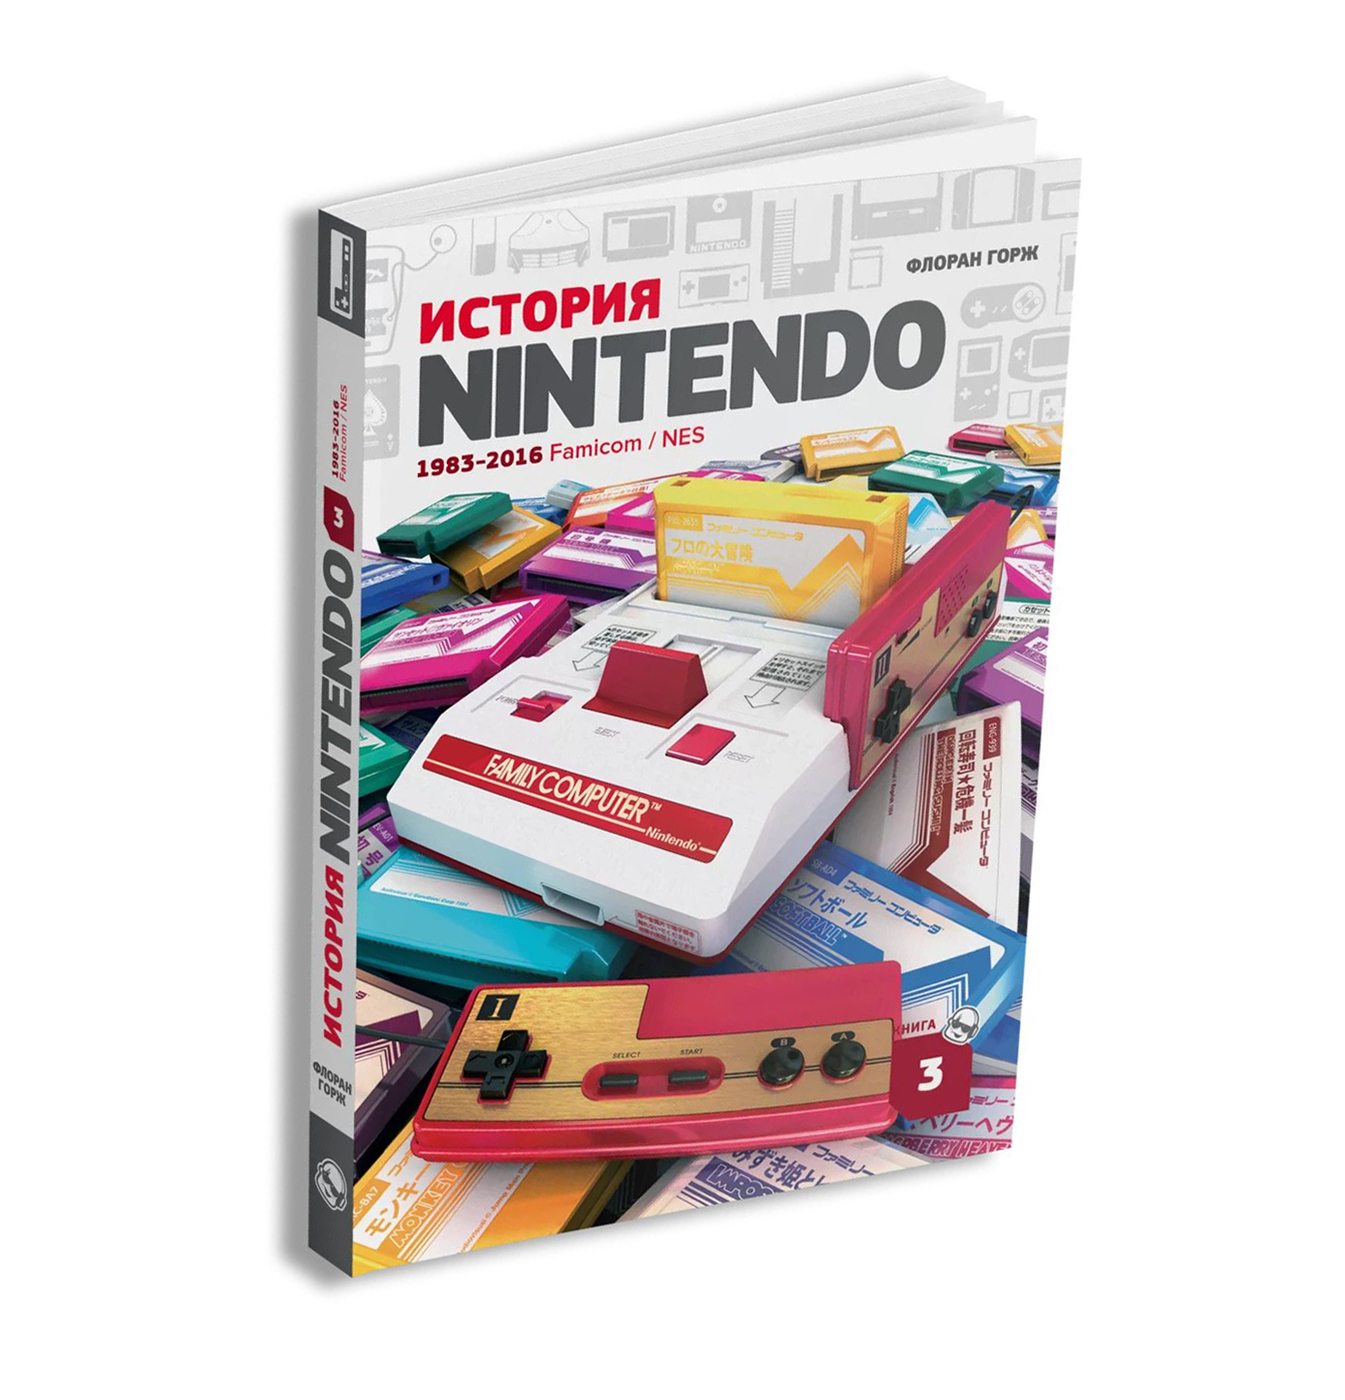 История nintendo. Книга история Nintendo. 1983-2016. Famicom/NES pdf. Нинтендо 1983. История Nintendo книга. Флоран Горж история Nintendo.